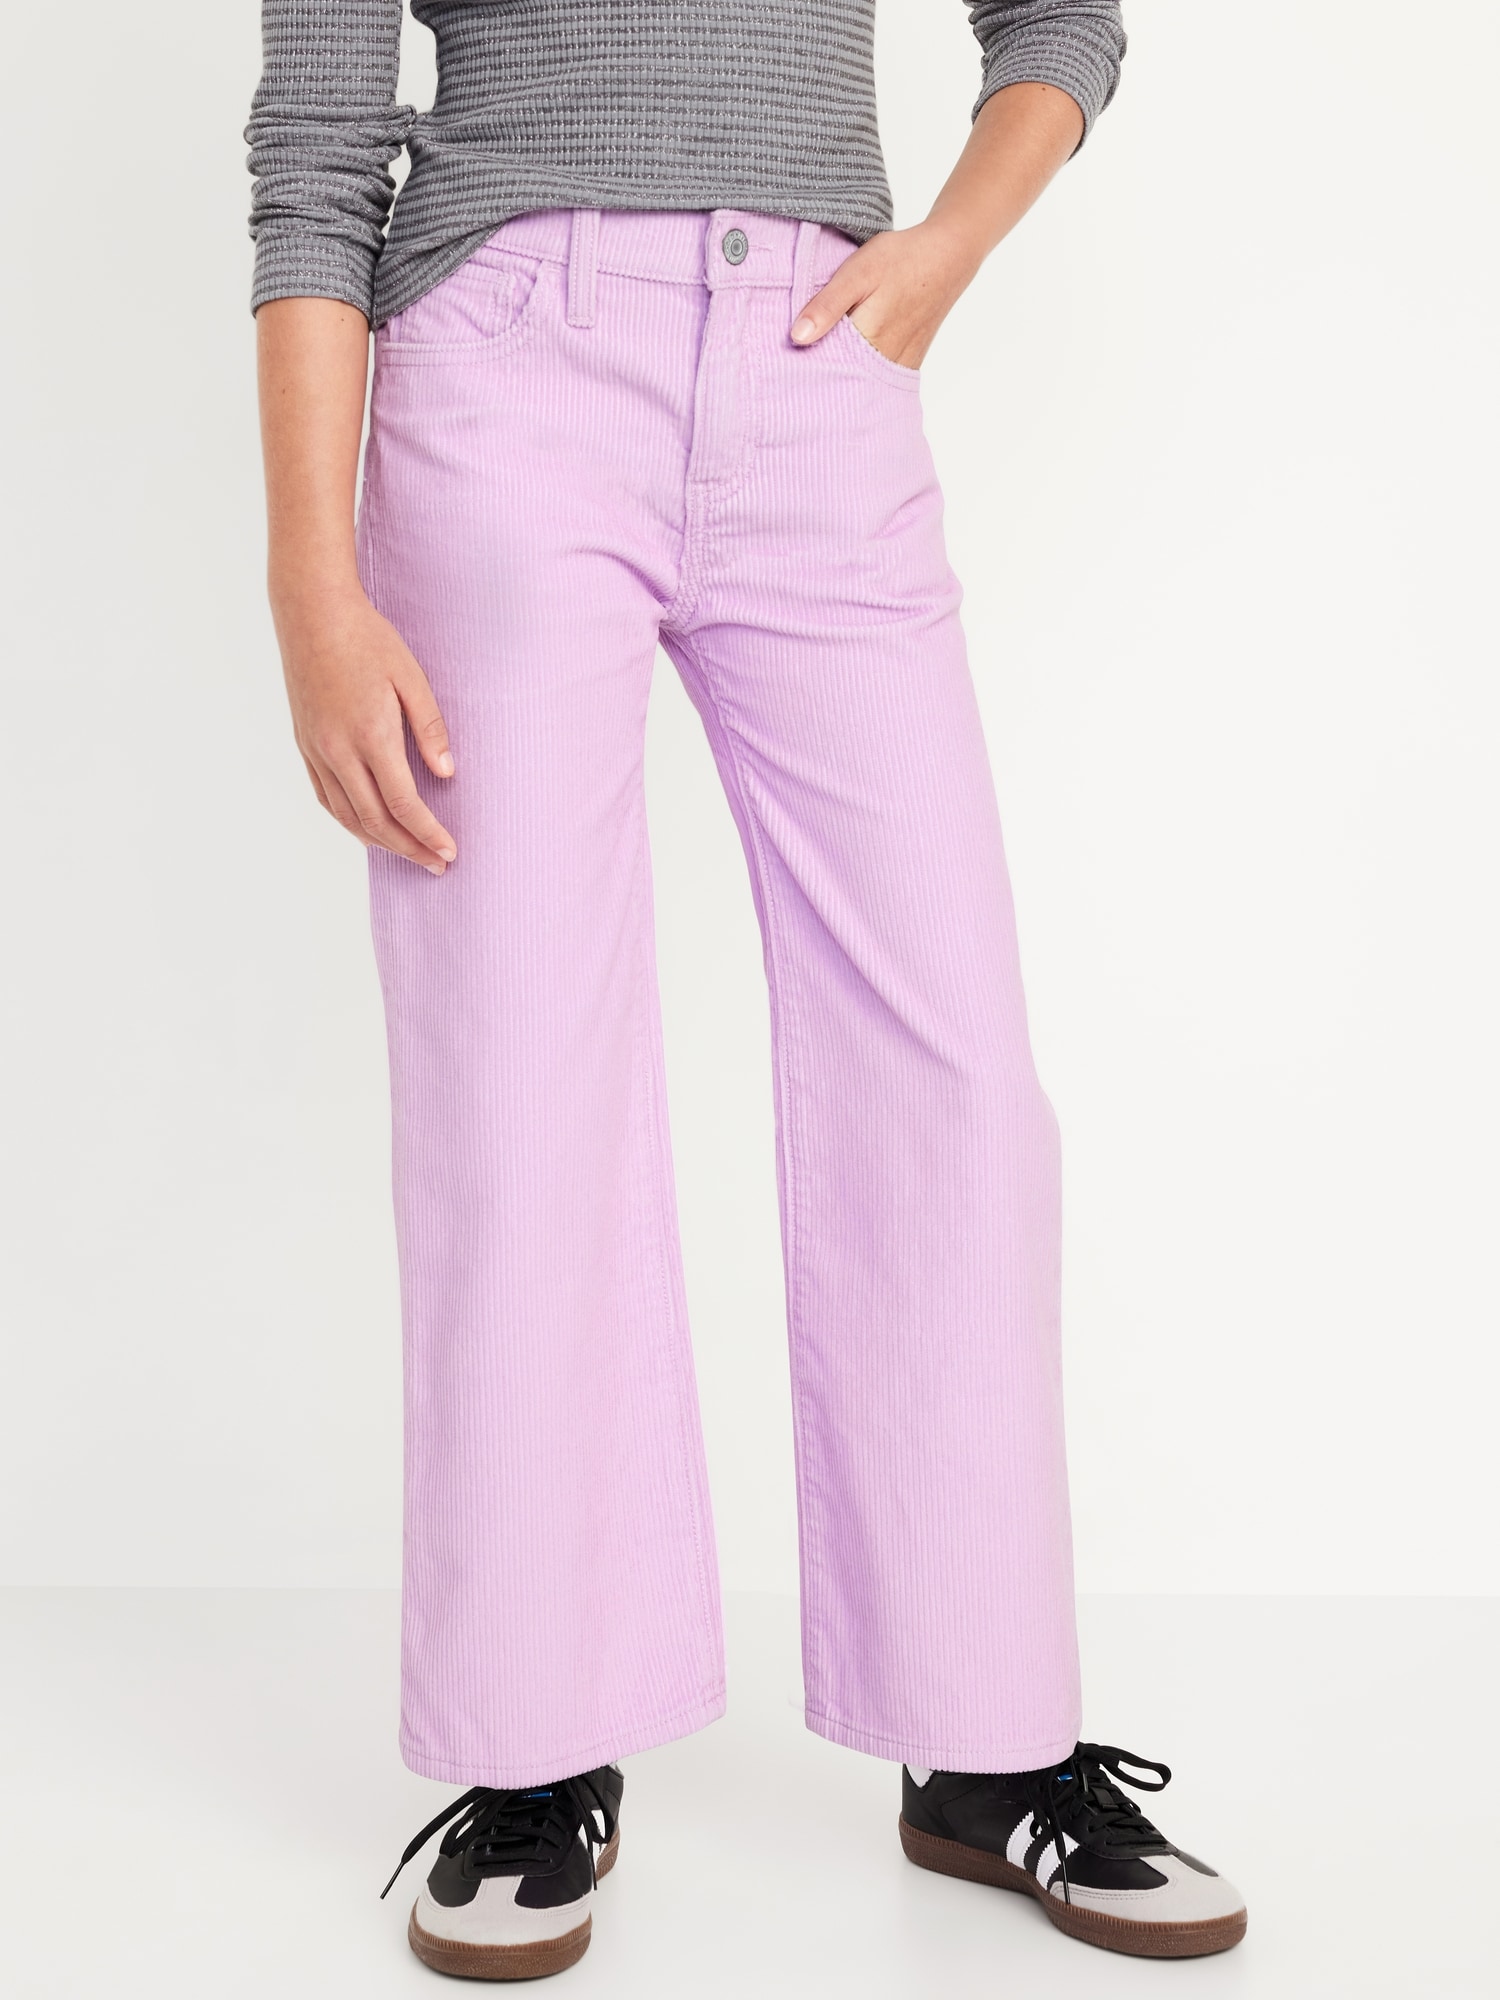 Ethnicvilla Regular Women Purple Jeans - Buy Ethnicvilla Regular Women Purple  Jeans Online at Best Prices in India | Flipkart.com